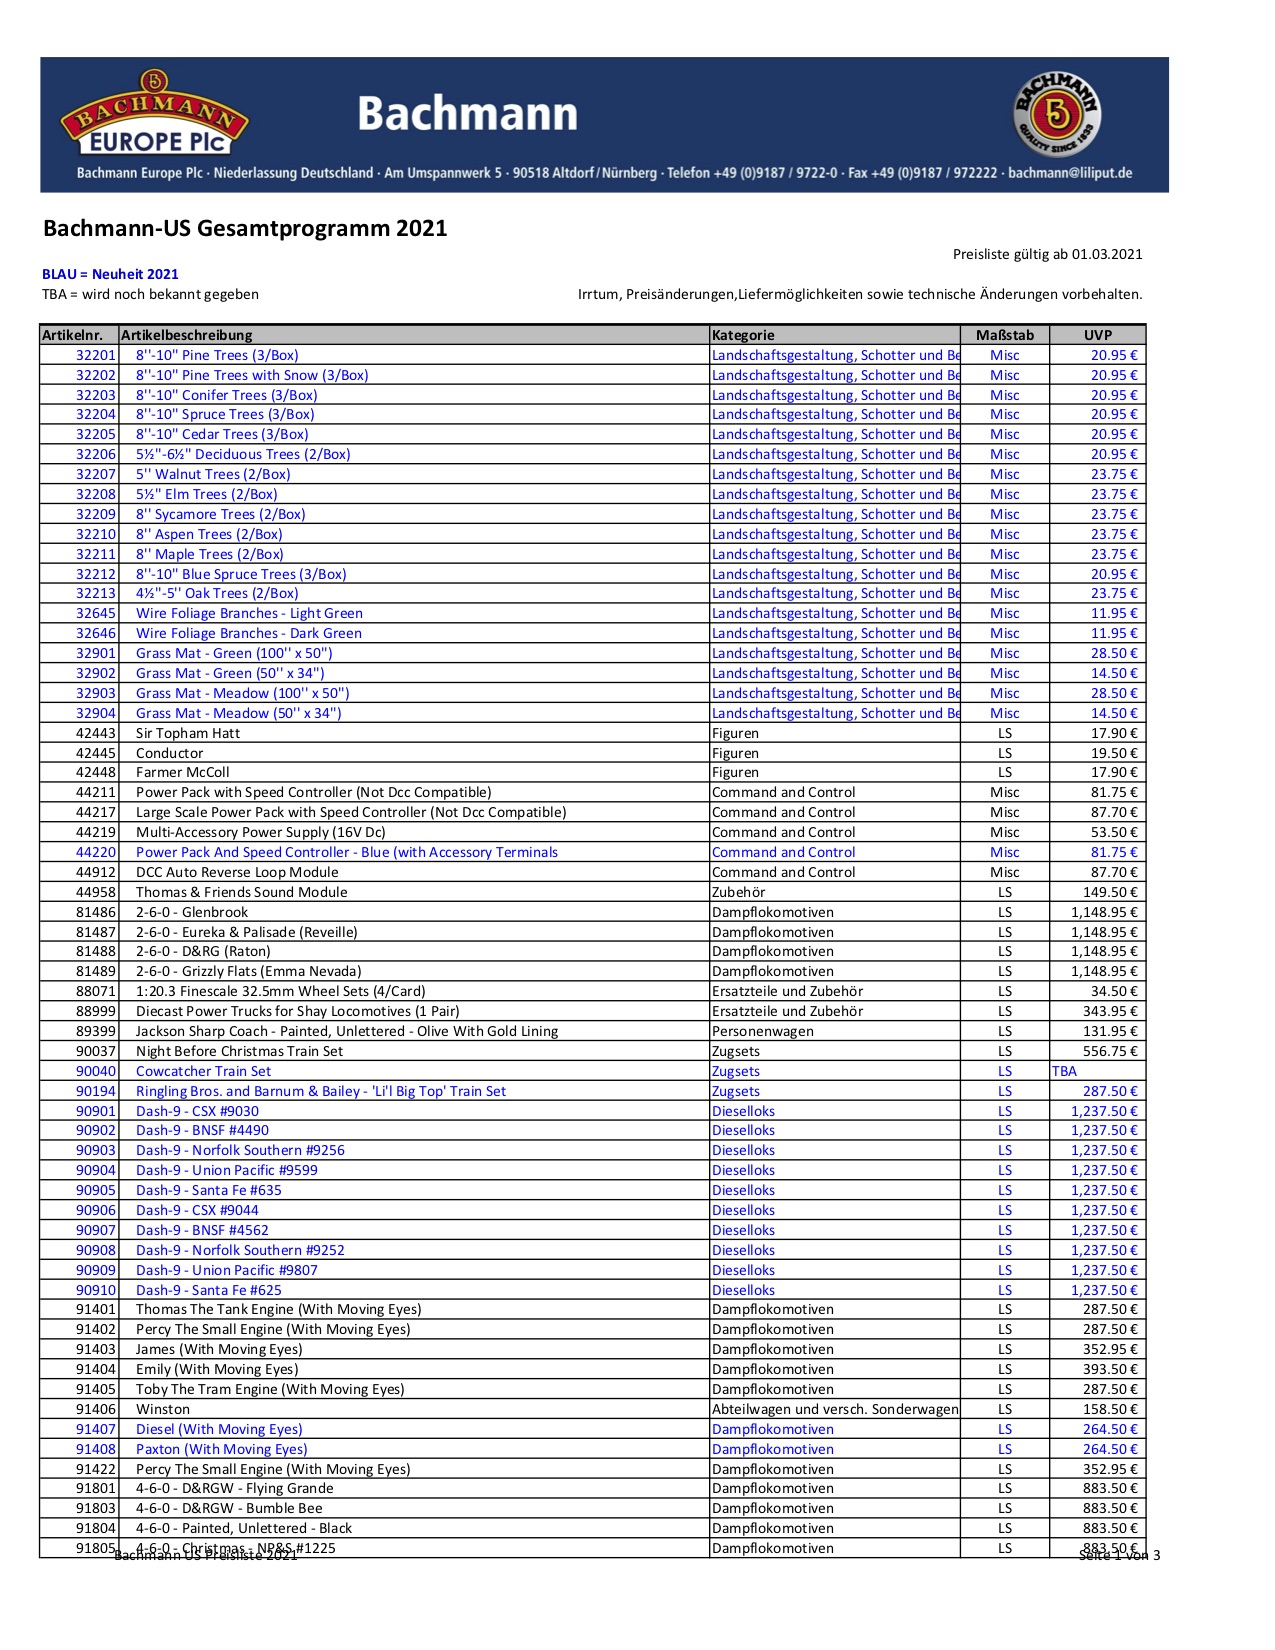 Bachmann Europe Plc Preisliste (Pricelist) 2021